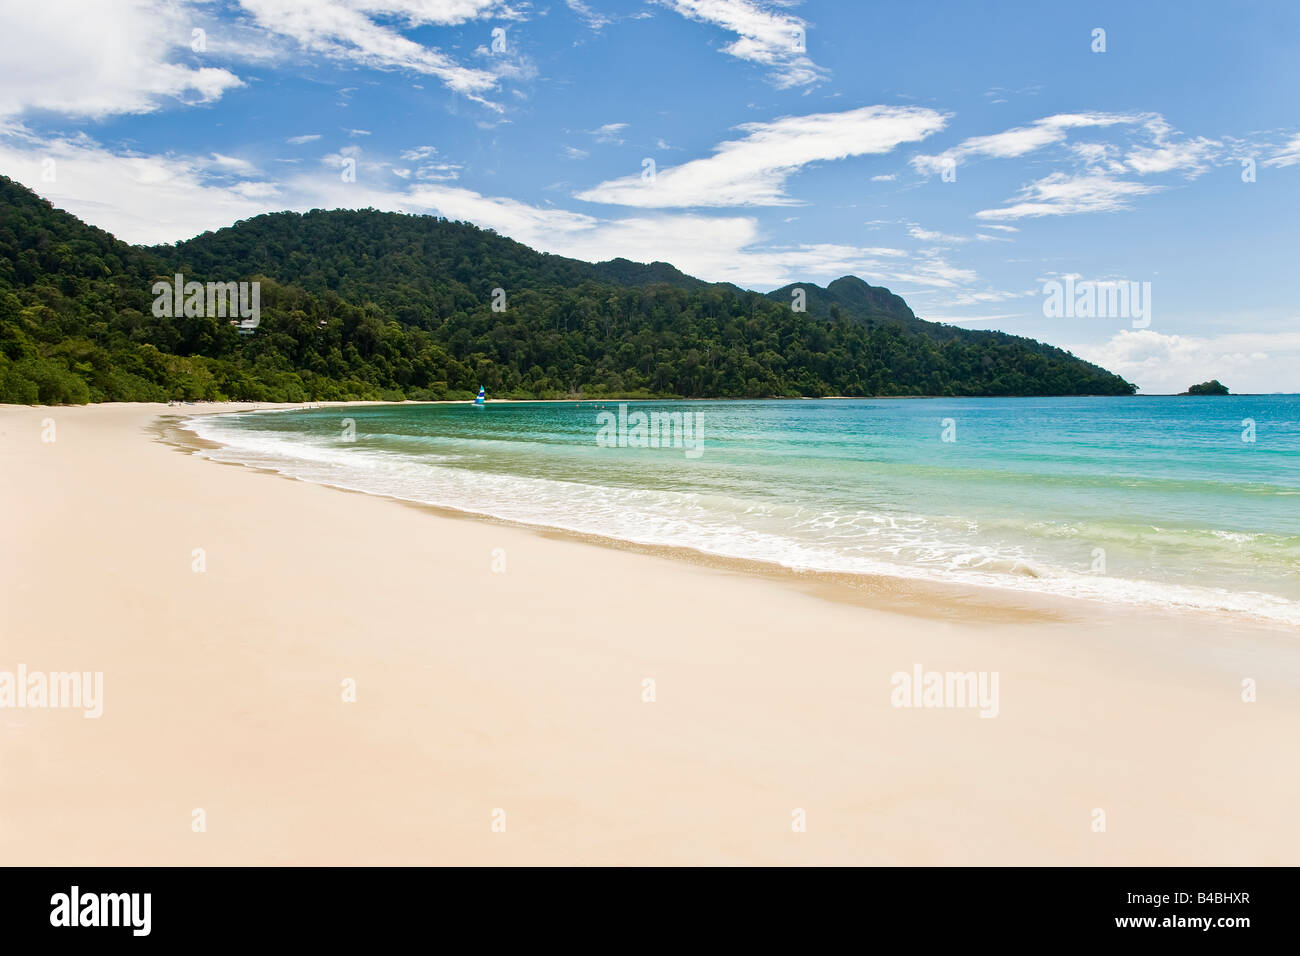 En Asie, la Malaisie, l'île de Langkawi, Pulau Langkawi, la plage et le littoral à Pulau Datai Banque D'Images